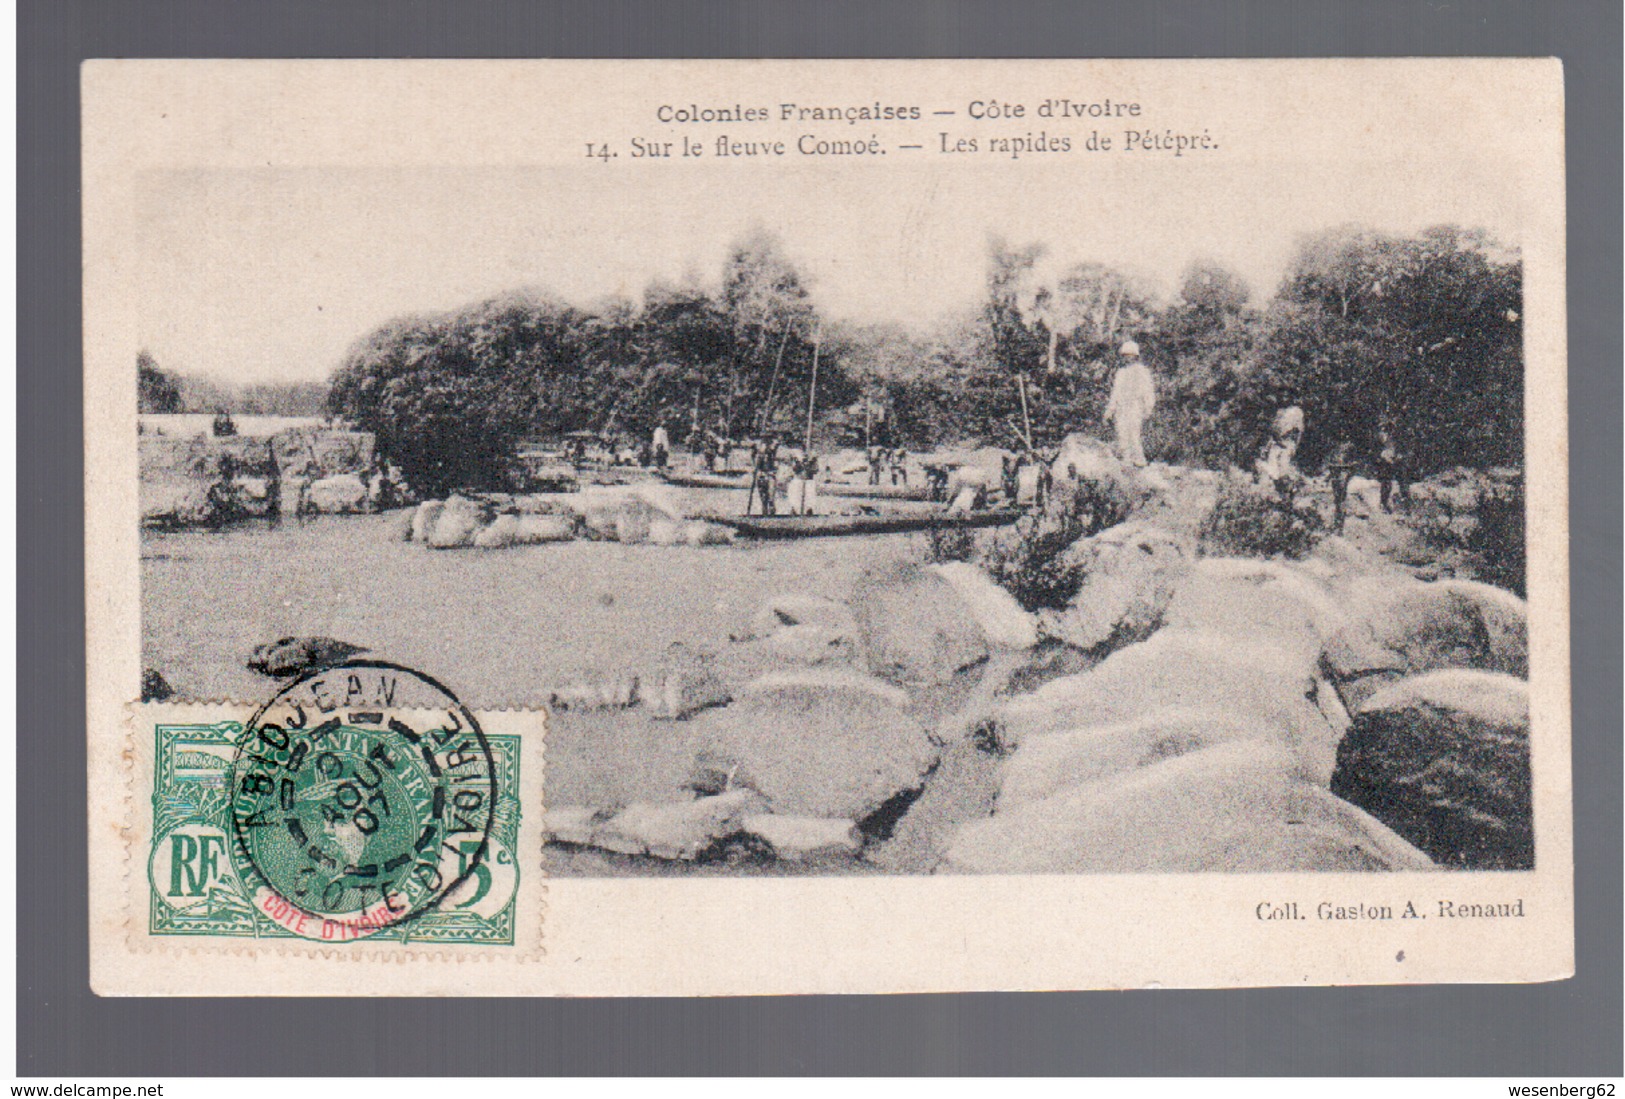 Cote D'Ivoire Sur Le Fleuve Comoe Les Rapides De Petepre 1907 OLD POSTCARD - Côte-d'Ivoire